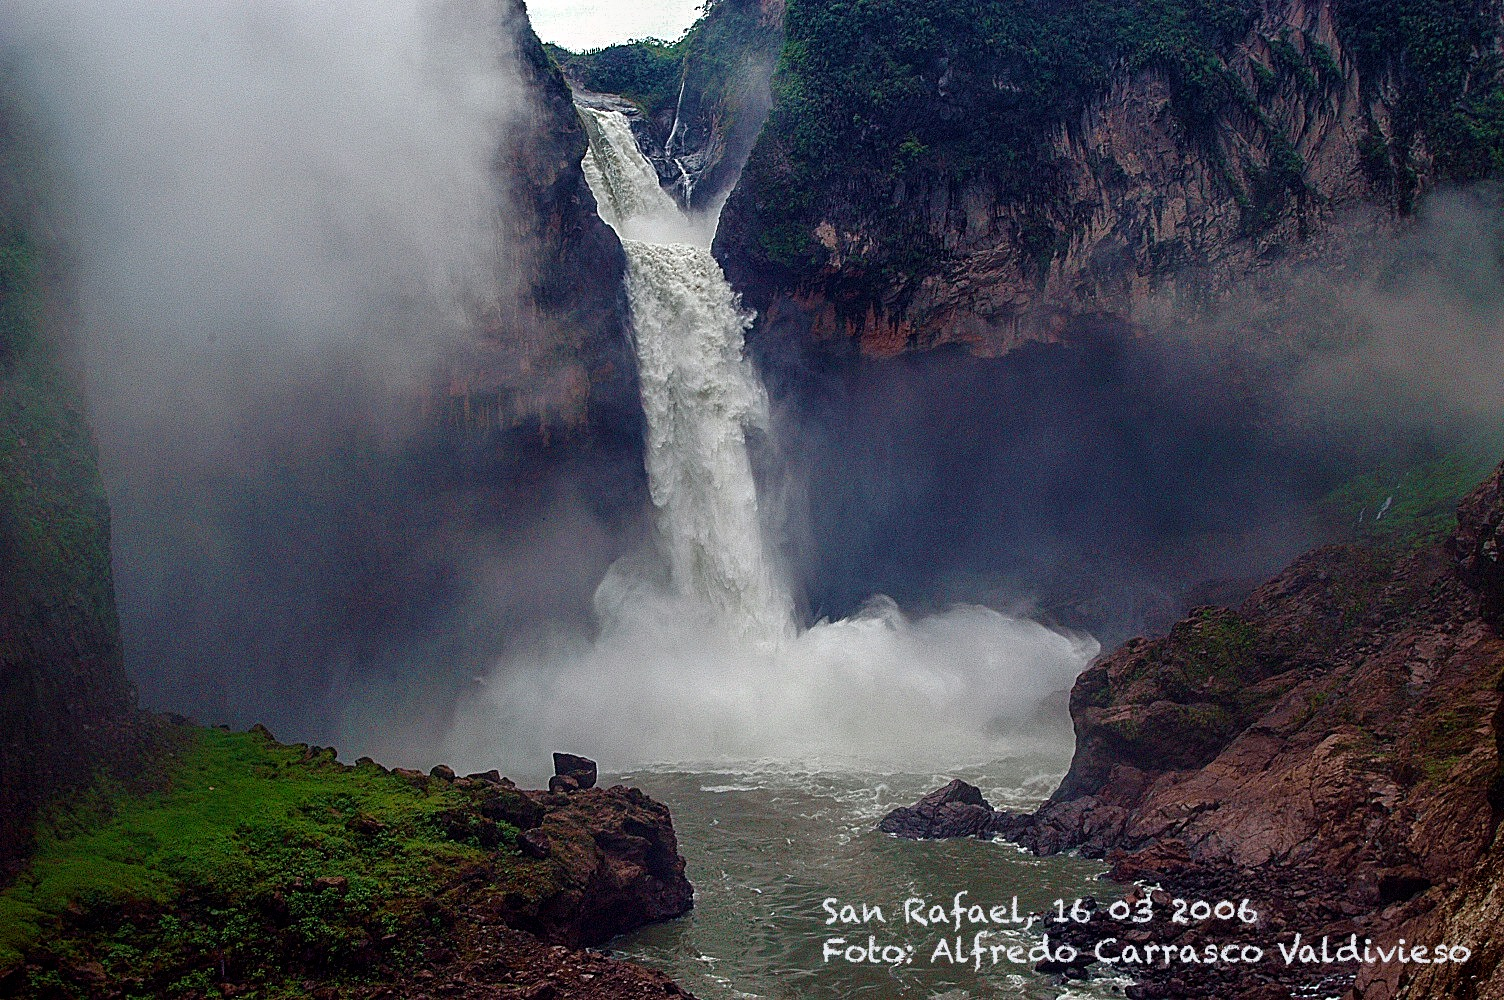 San rafael waterfall